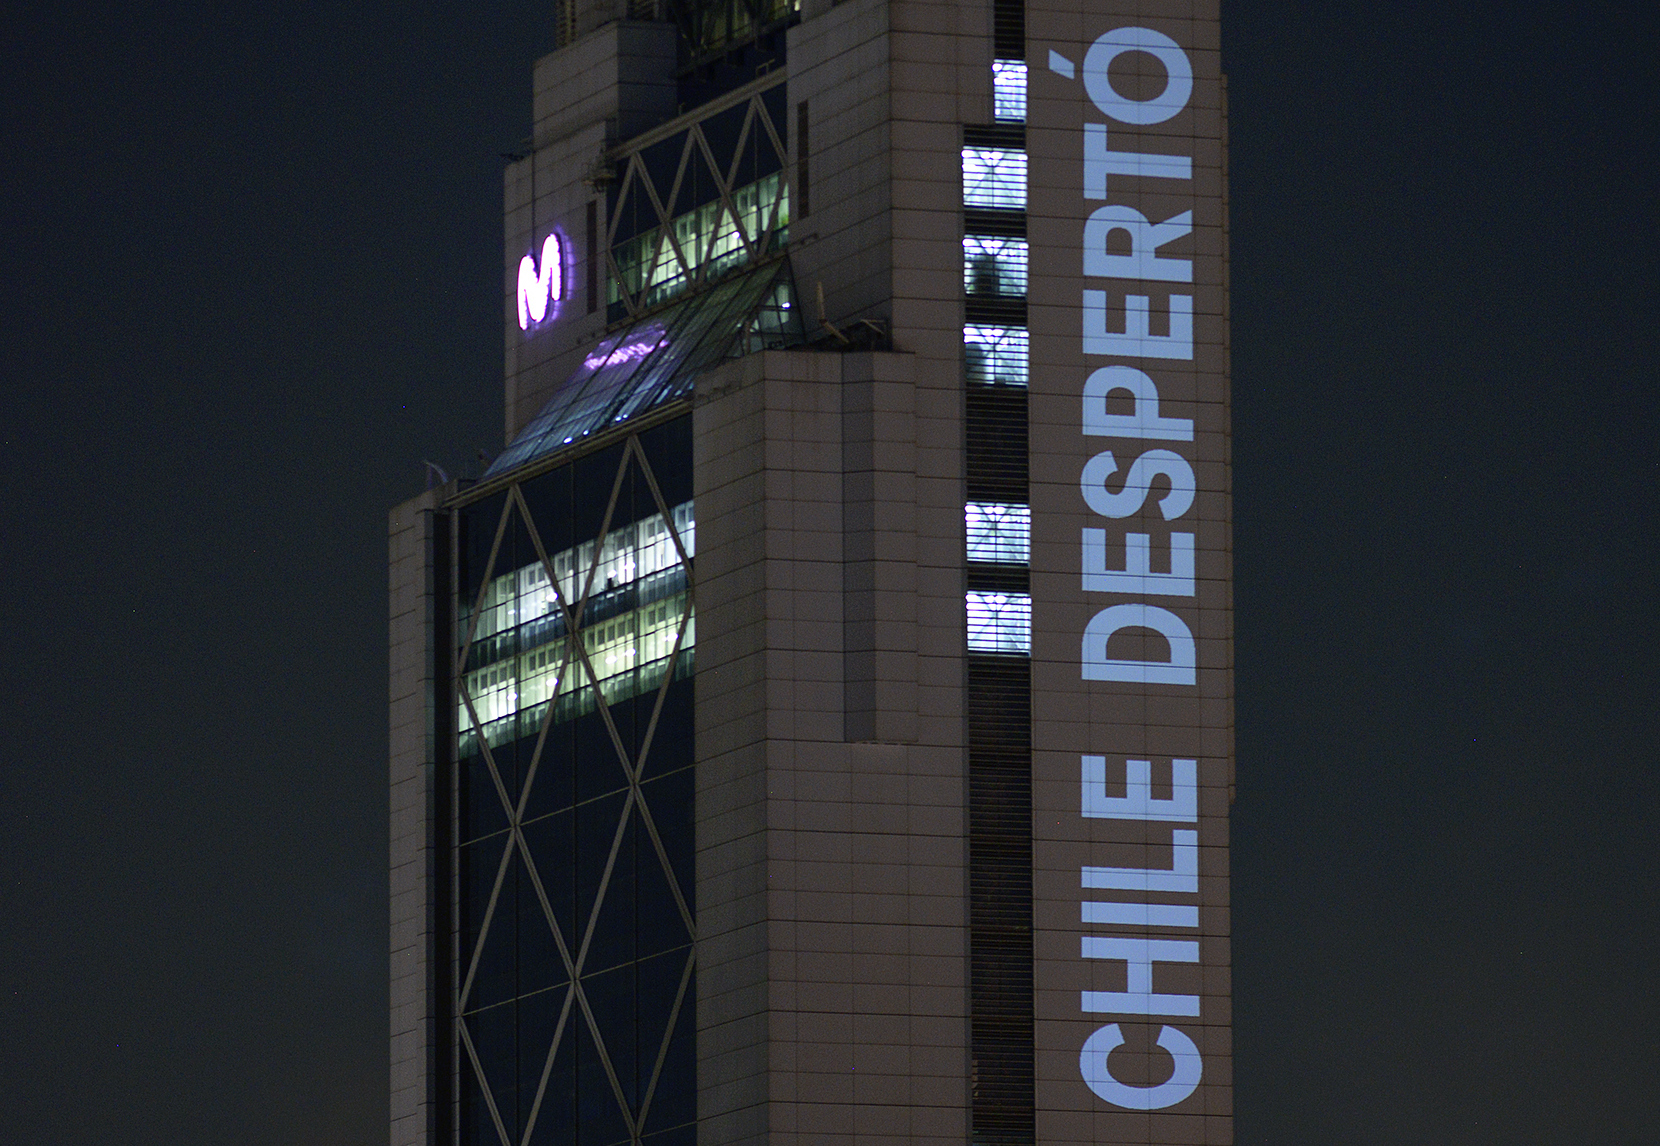 Chile despertó, intervención de Delight Lab en la Torre Telefónica, Providencia, Santiago de Chile, octubre de 2019. Foto: Gonzalo Donoso